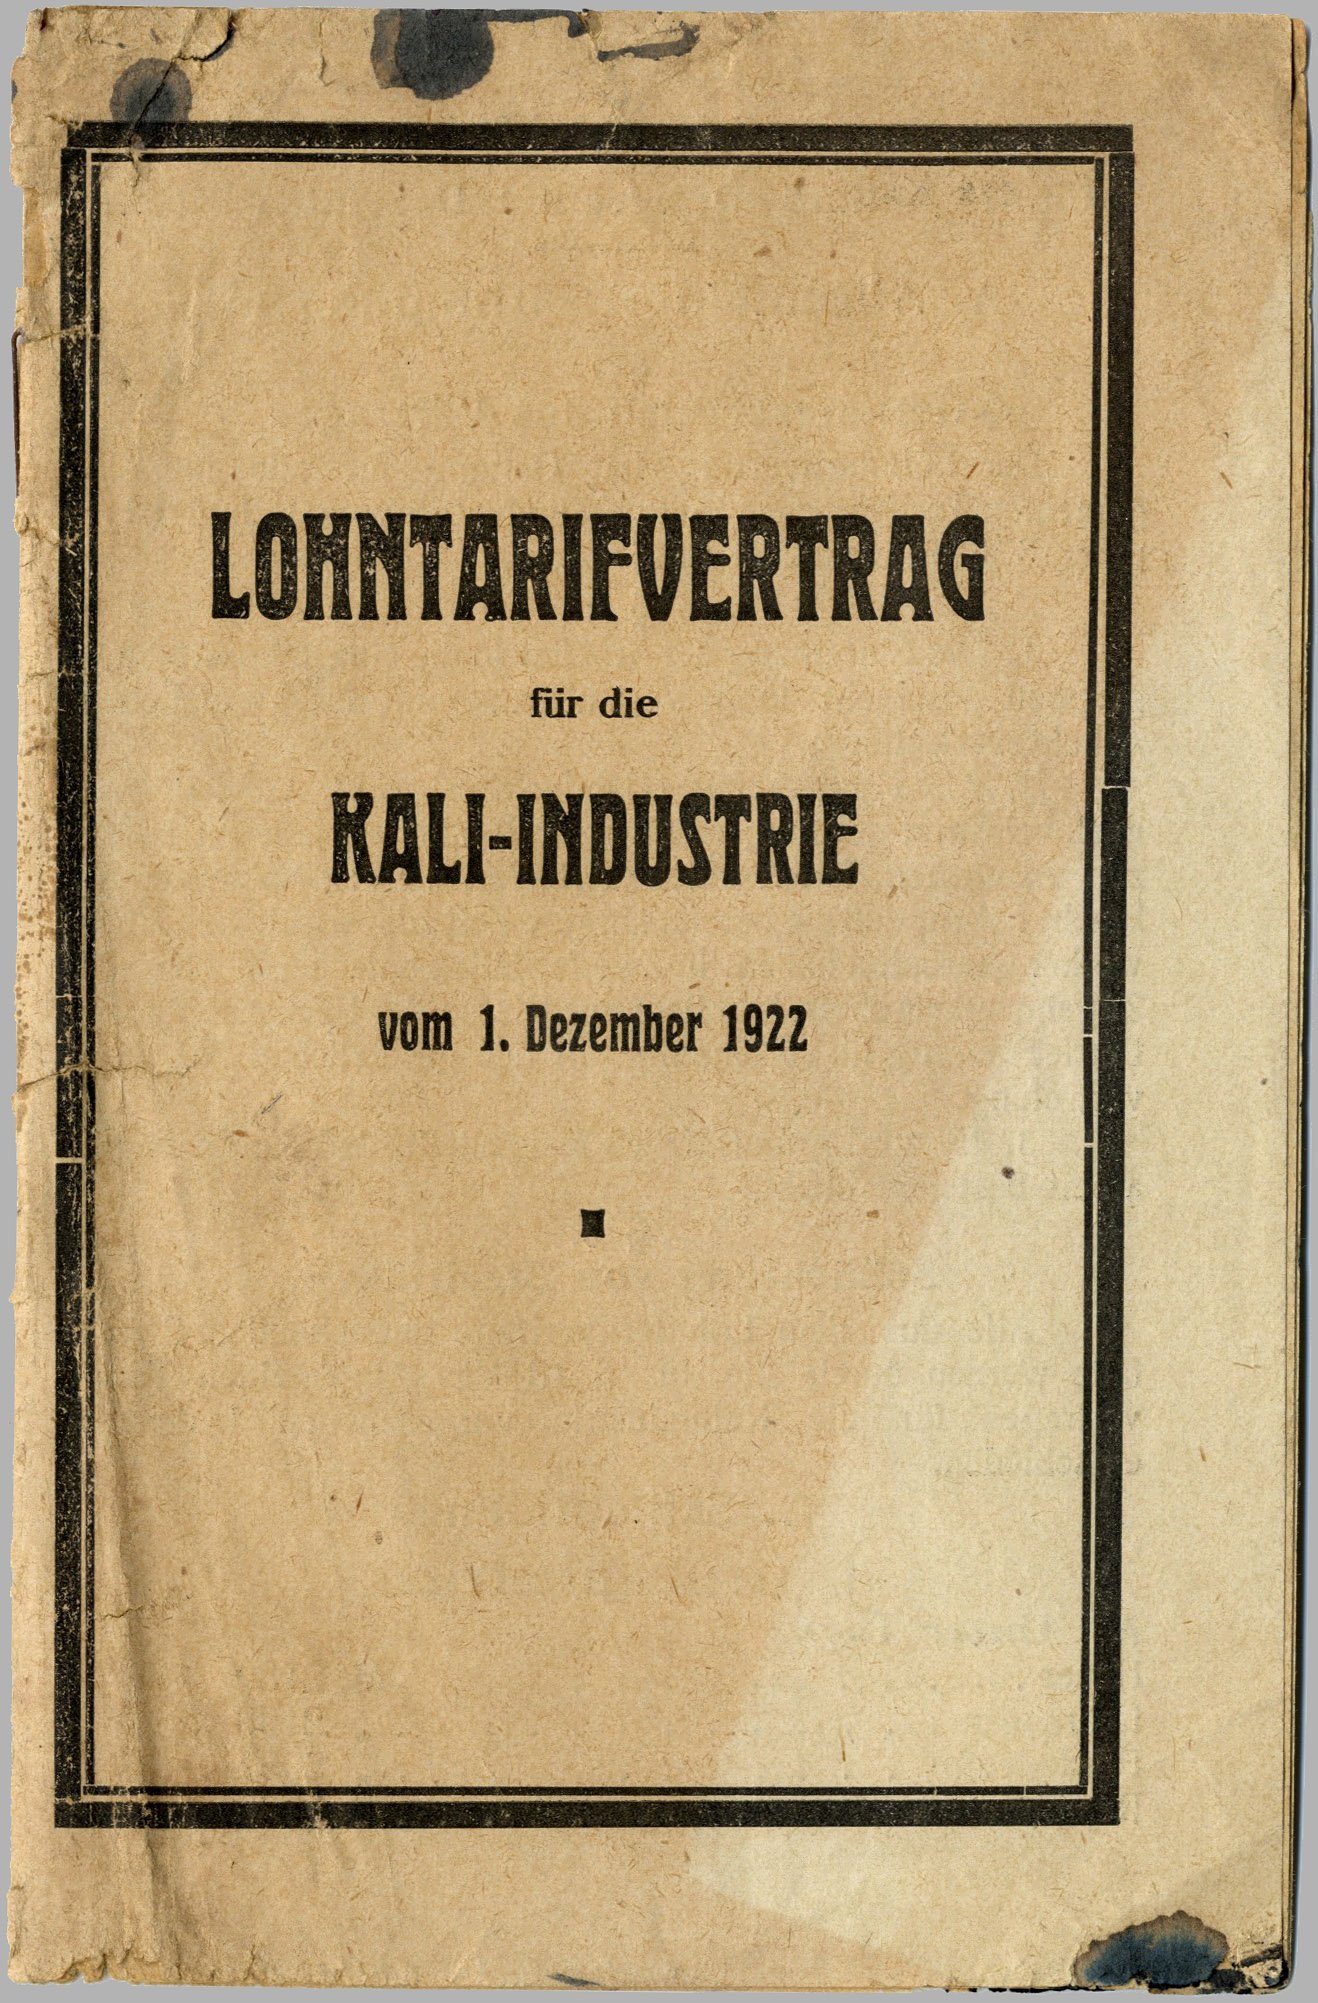 Lohntarifvertrag für die Kali-Industrie vom 1. Dezember 1922 (Werra-Kalibergbau-Museum, Heringen/W. CC BY-NC-SA)